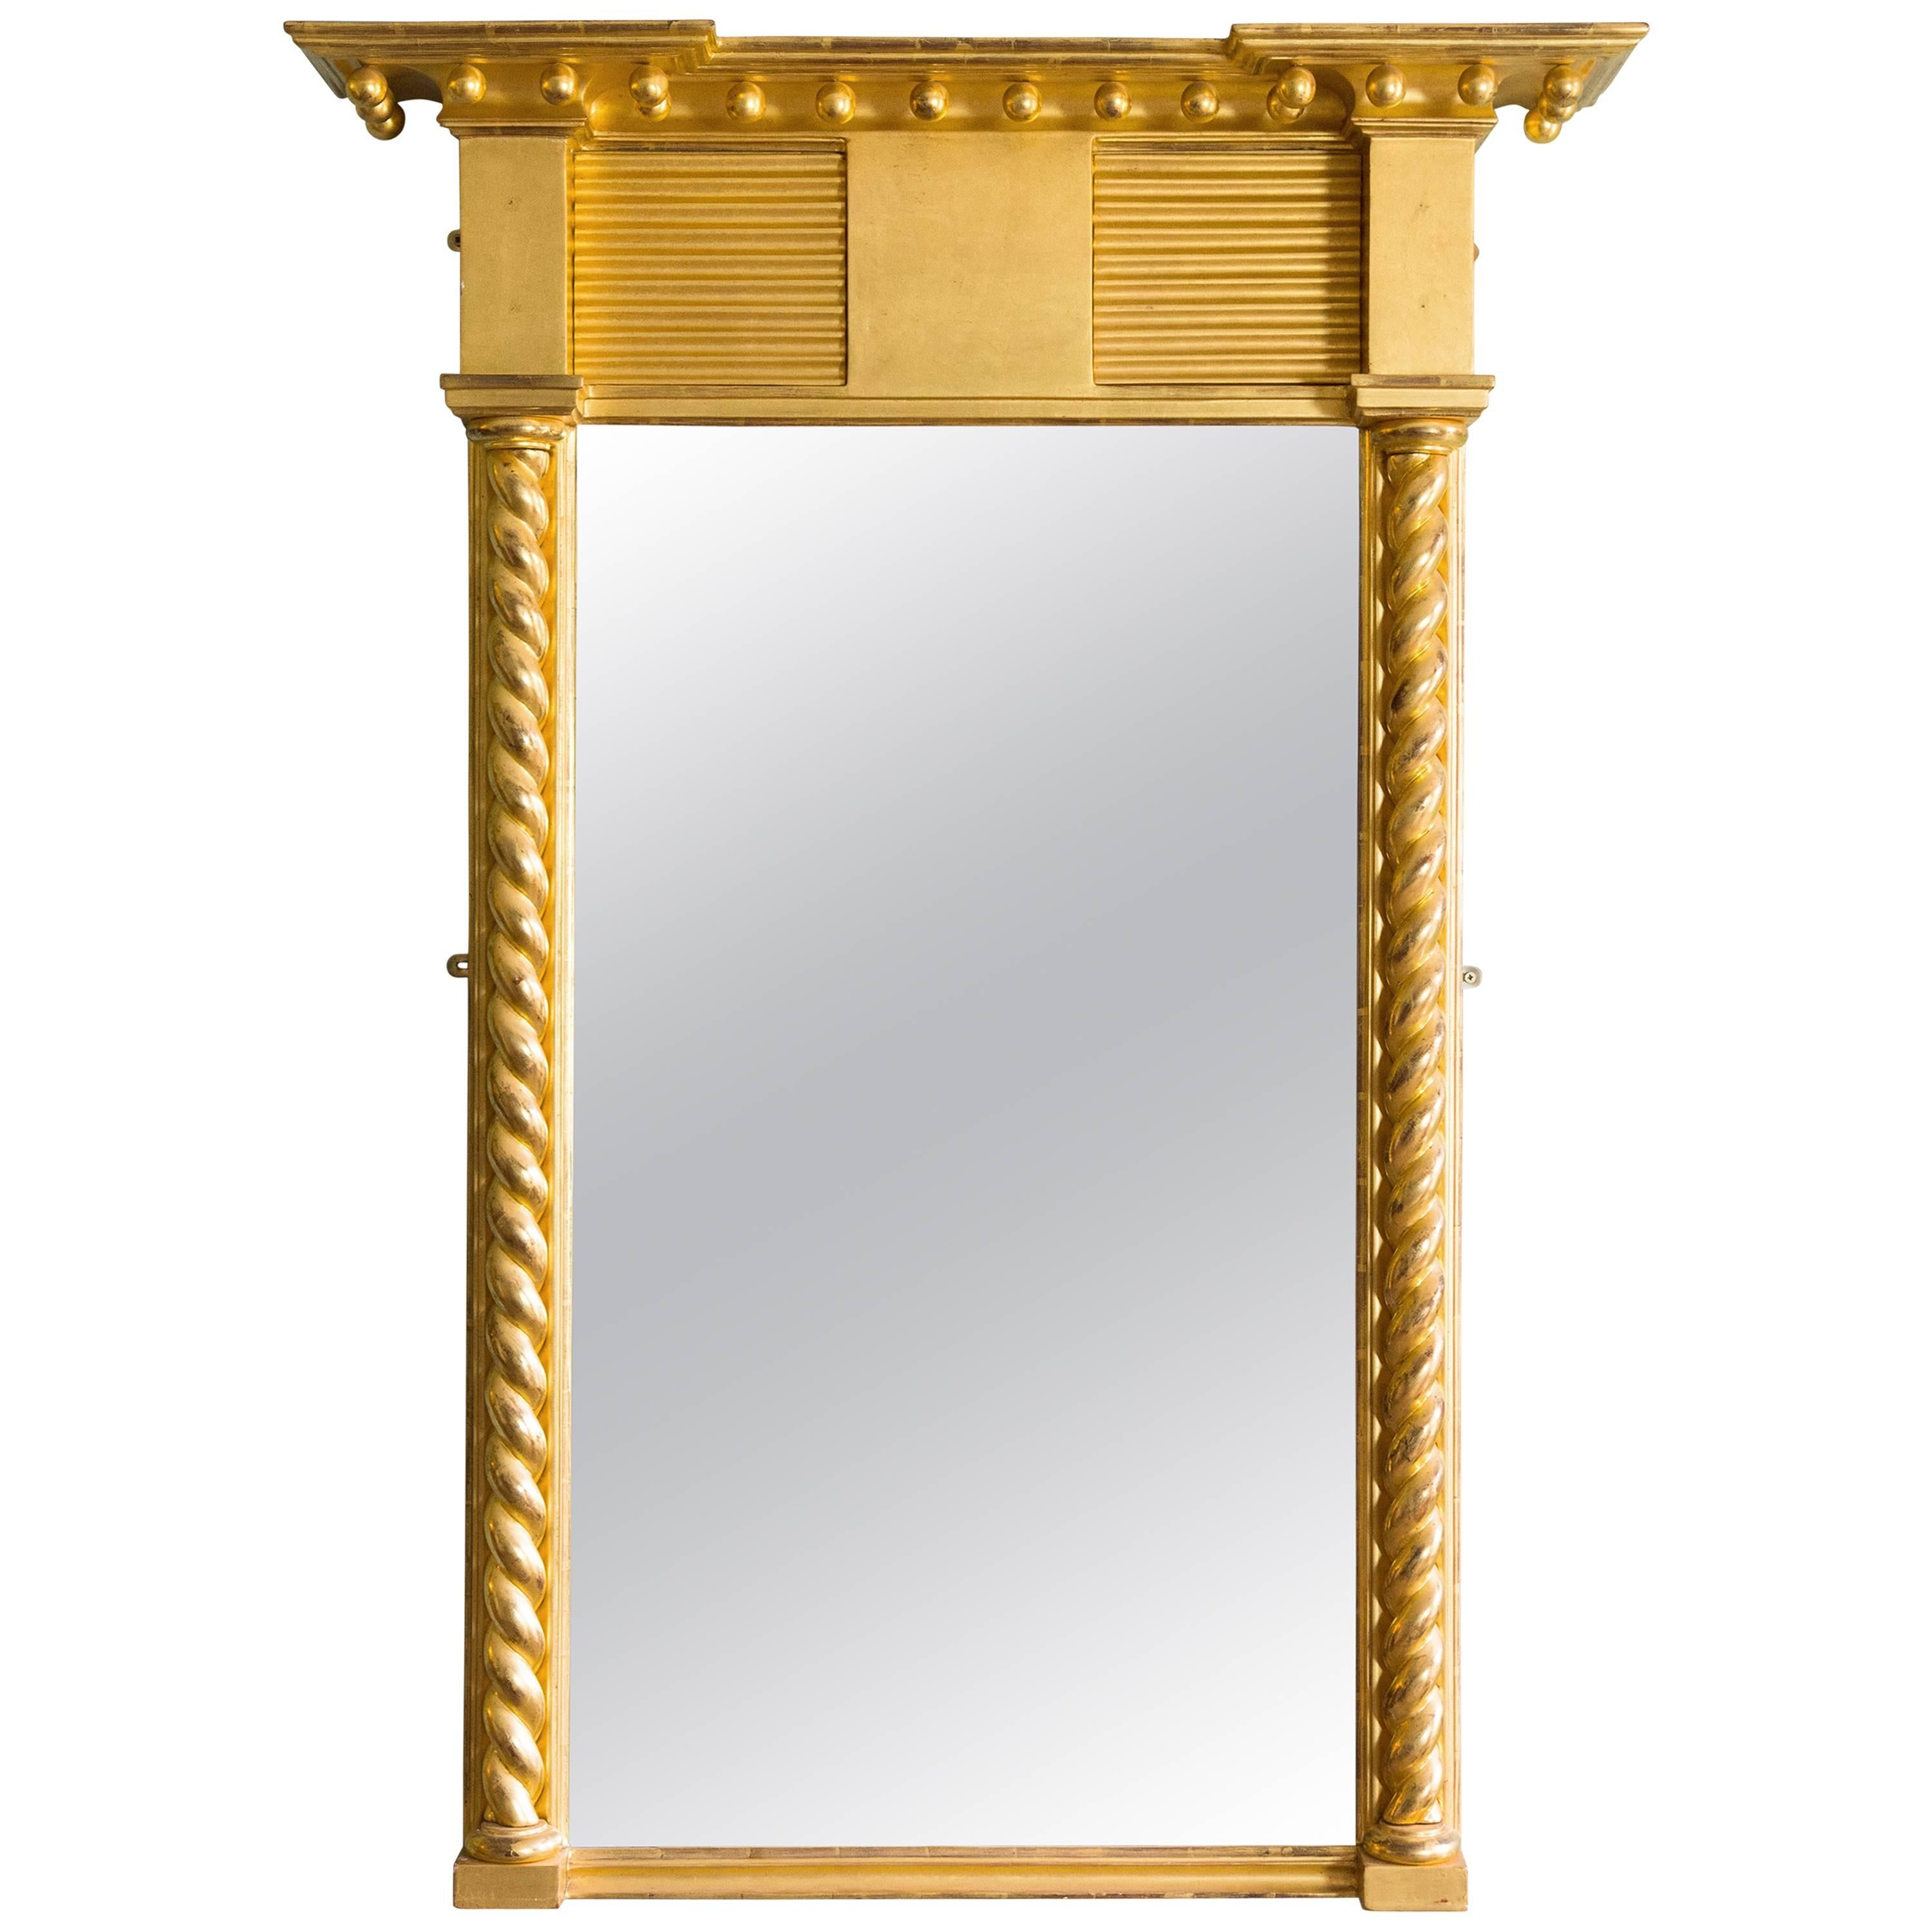 Regency Style Giltwood Pier Mirror